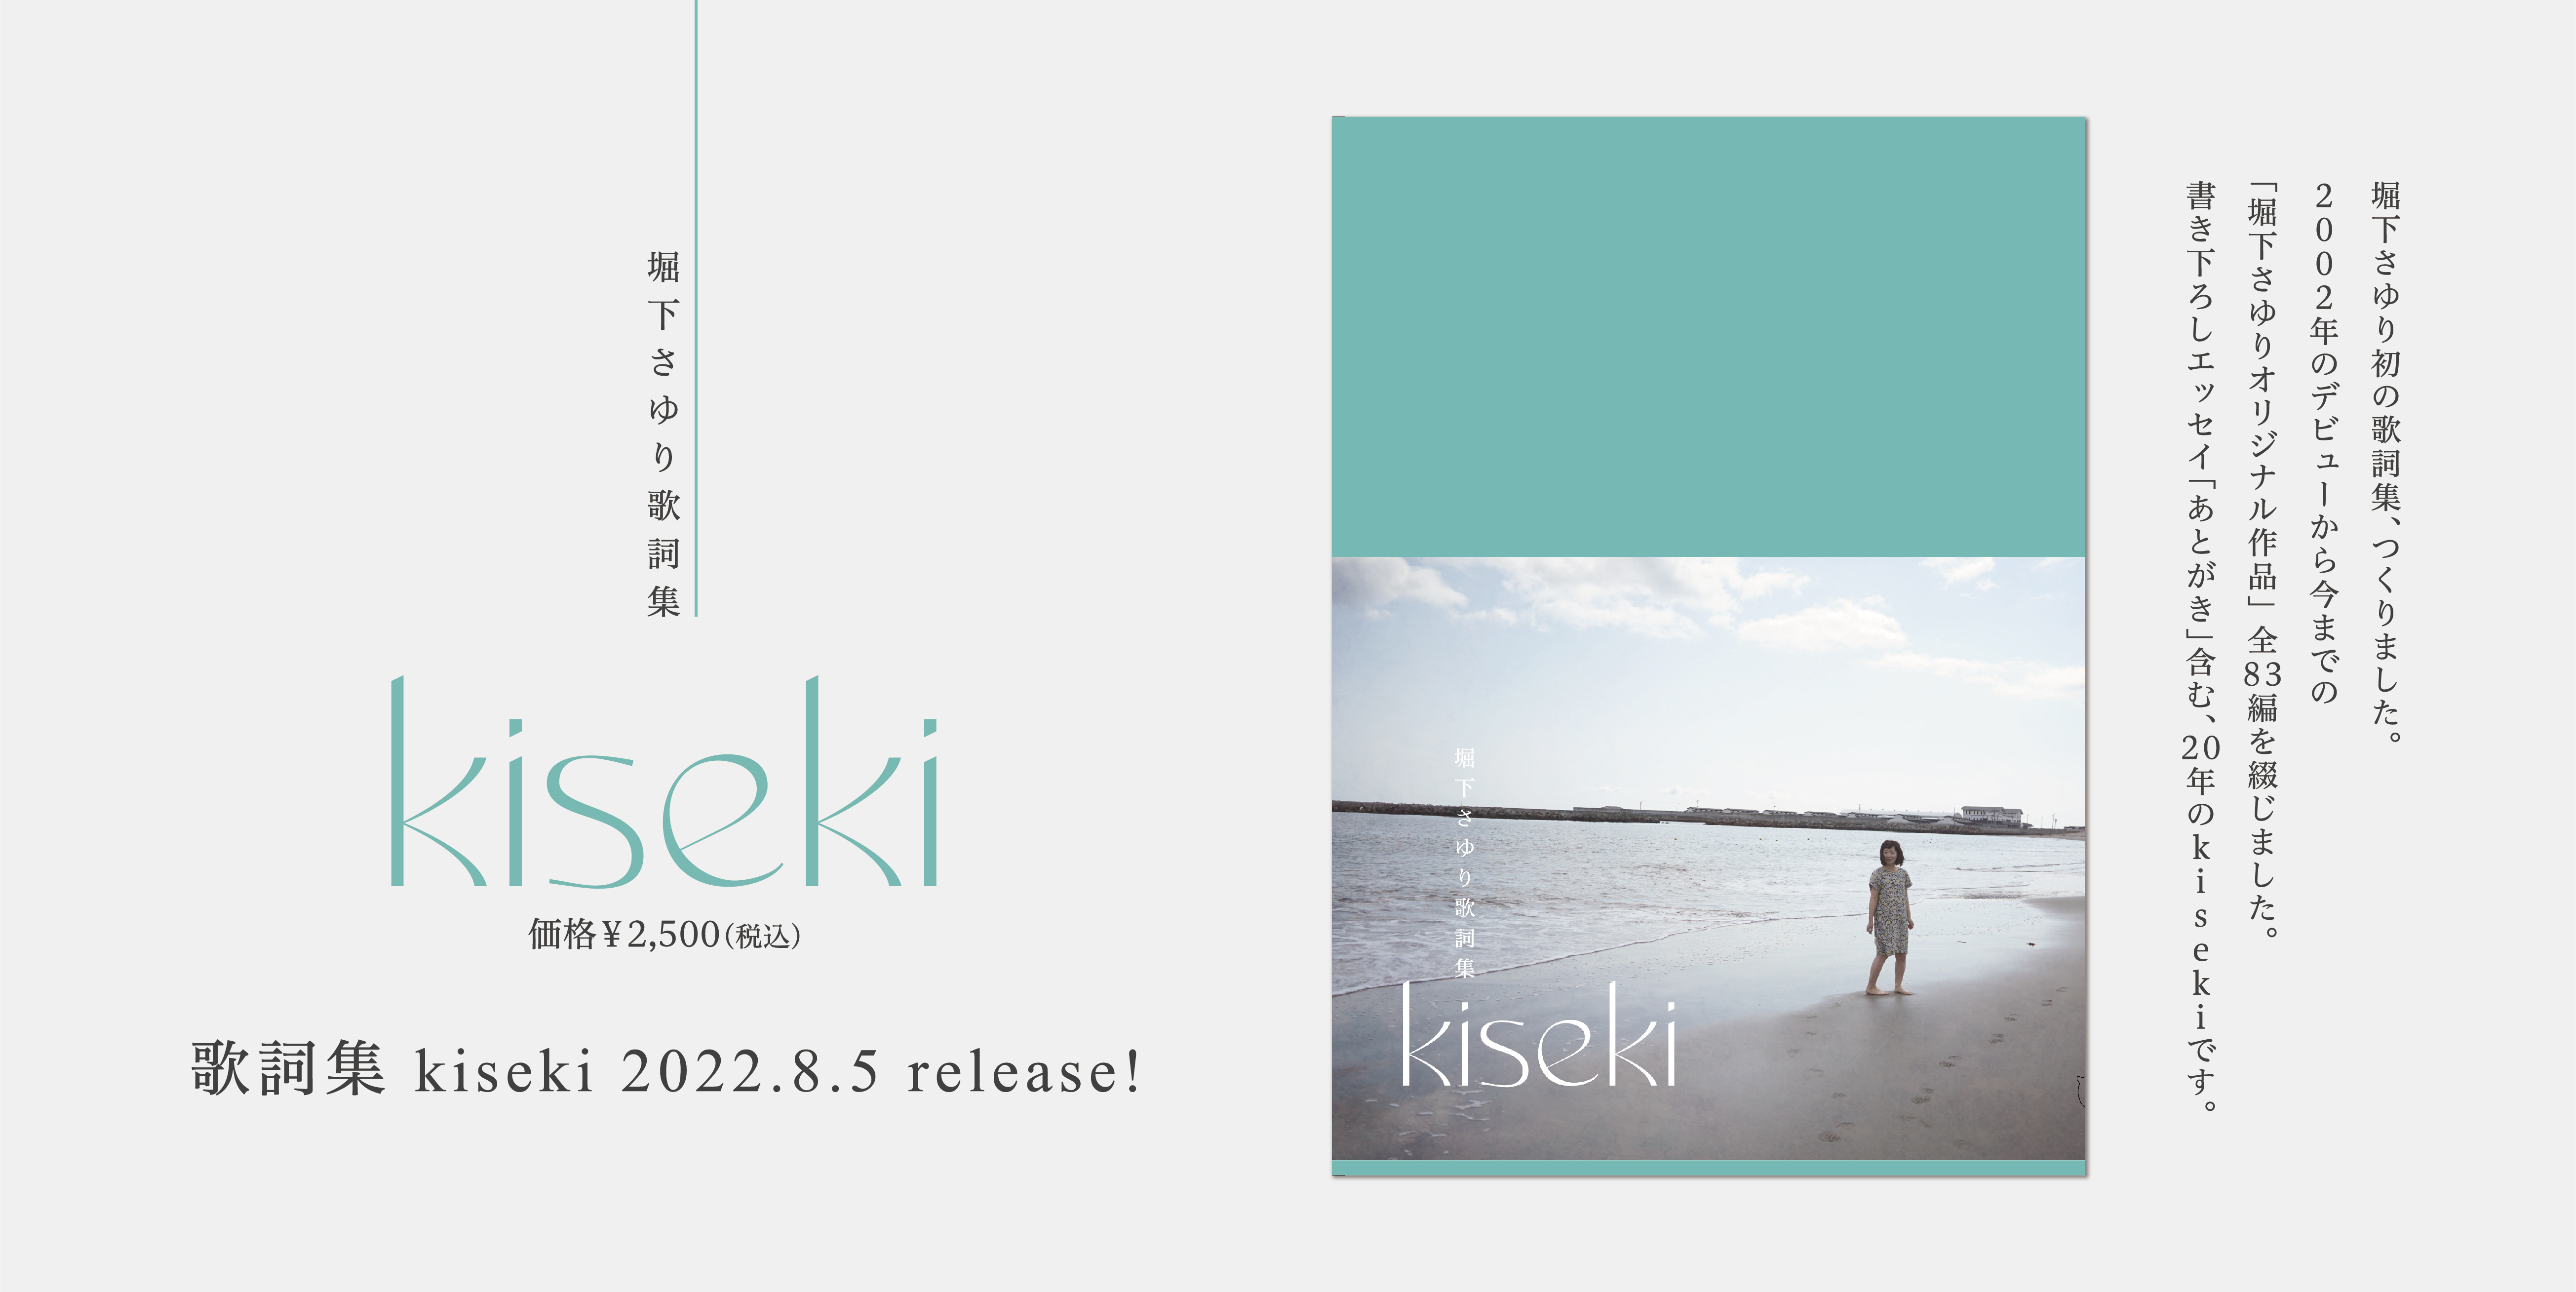 歌詞集 kiseki 2022.8.5 release!